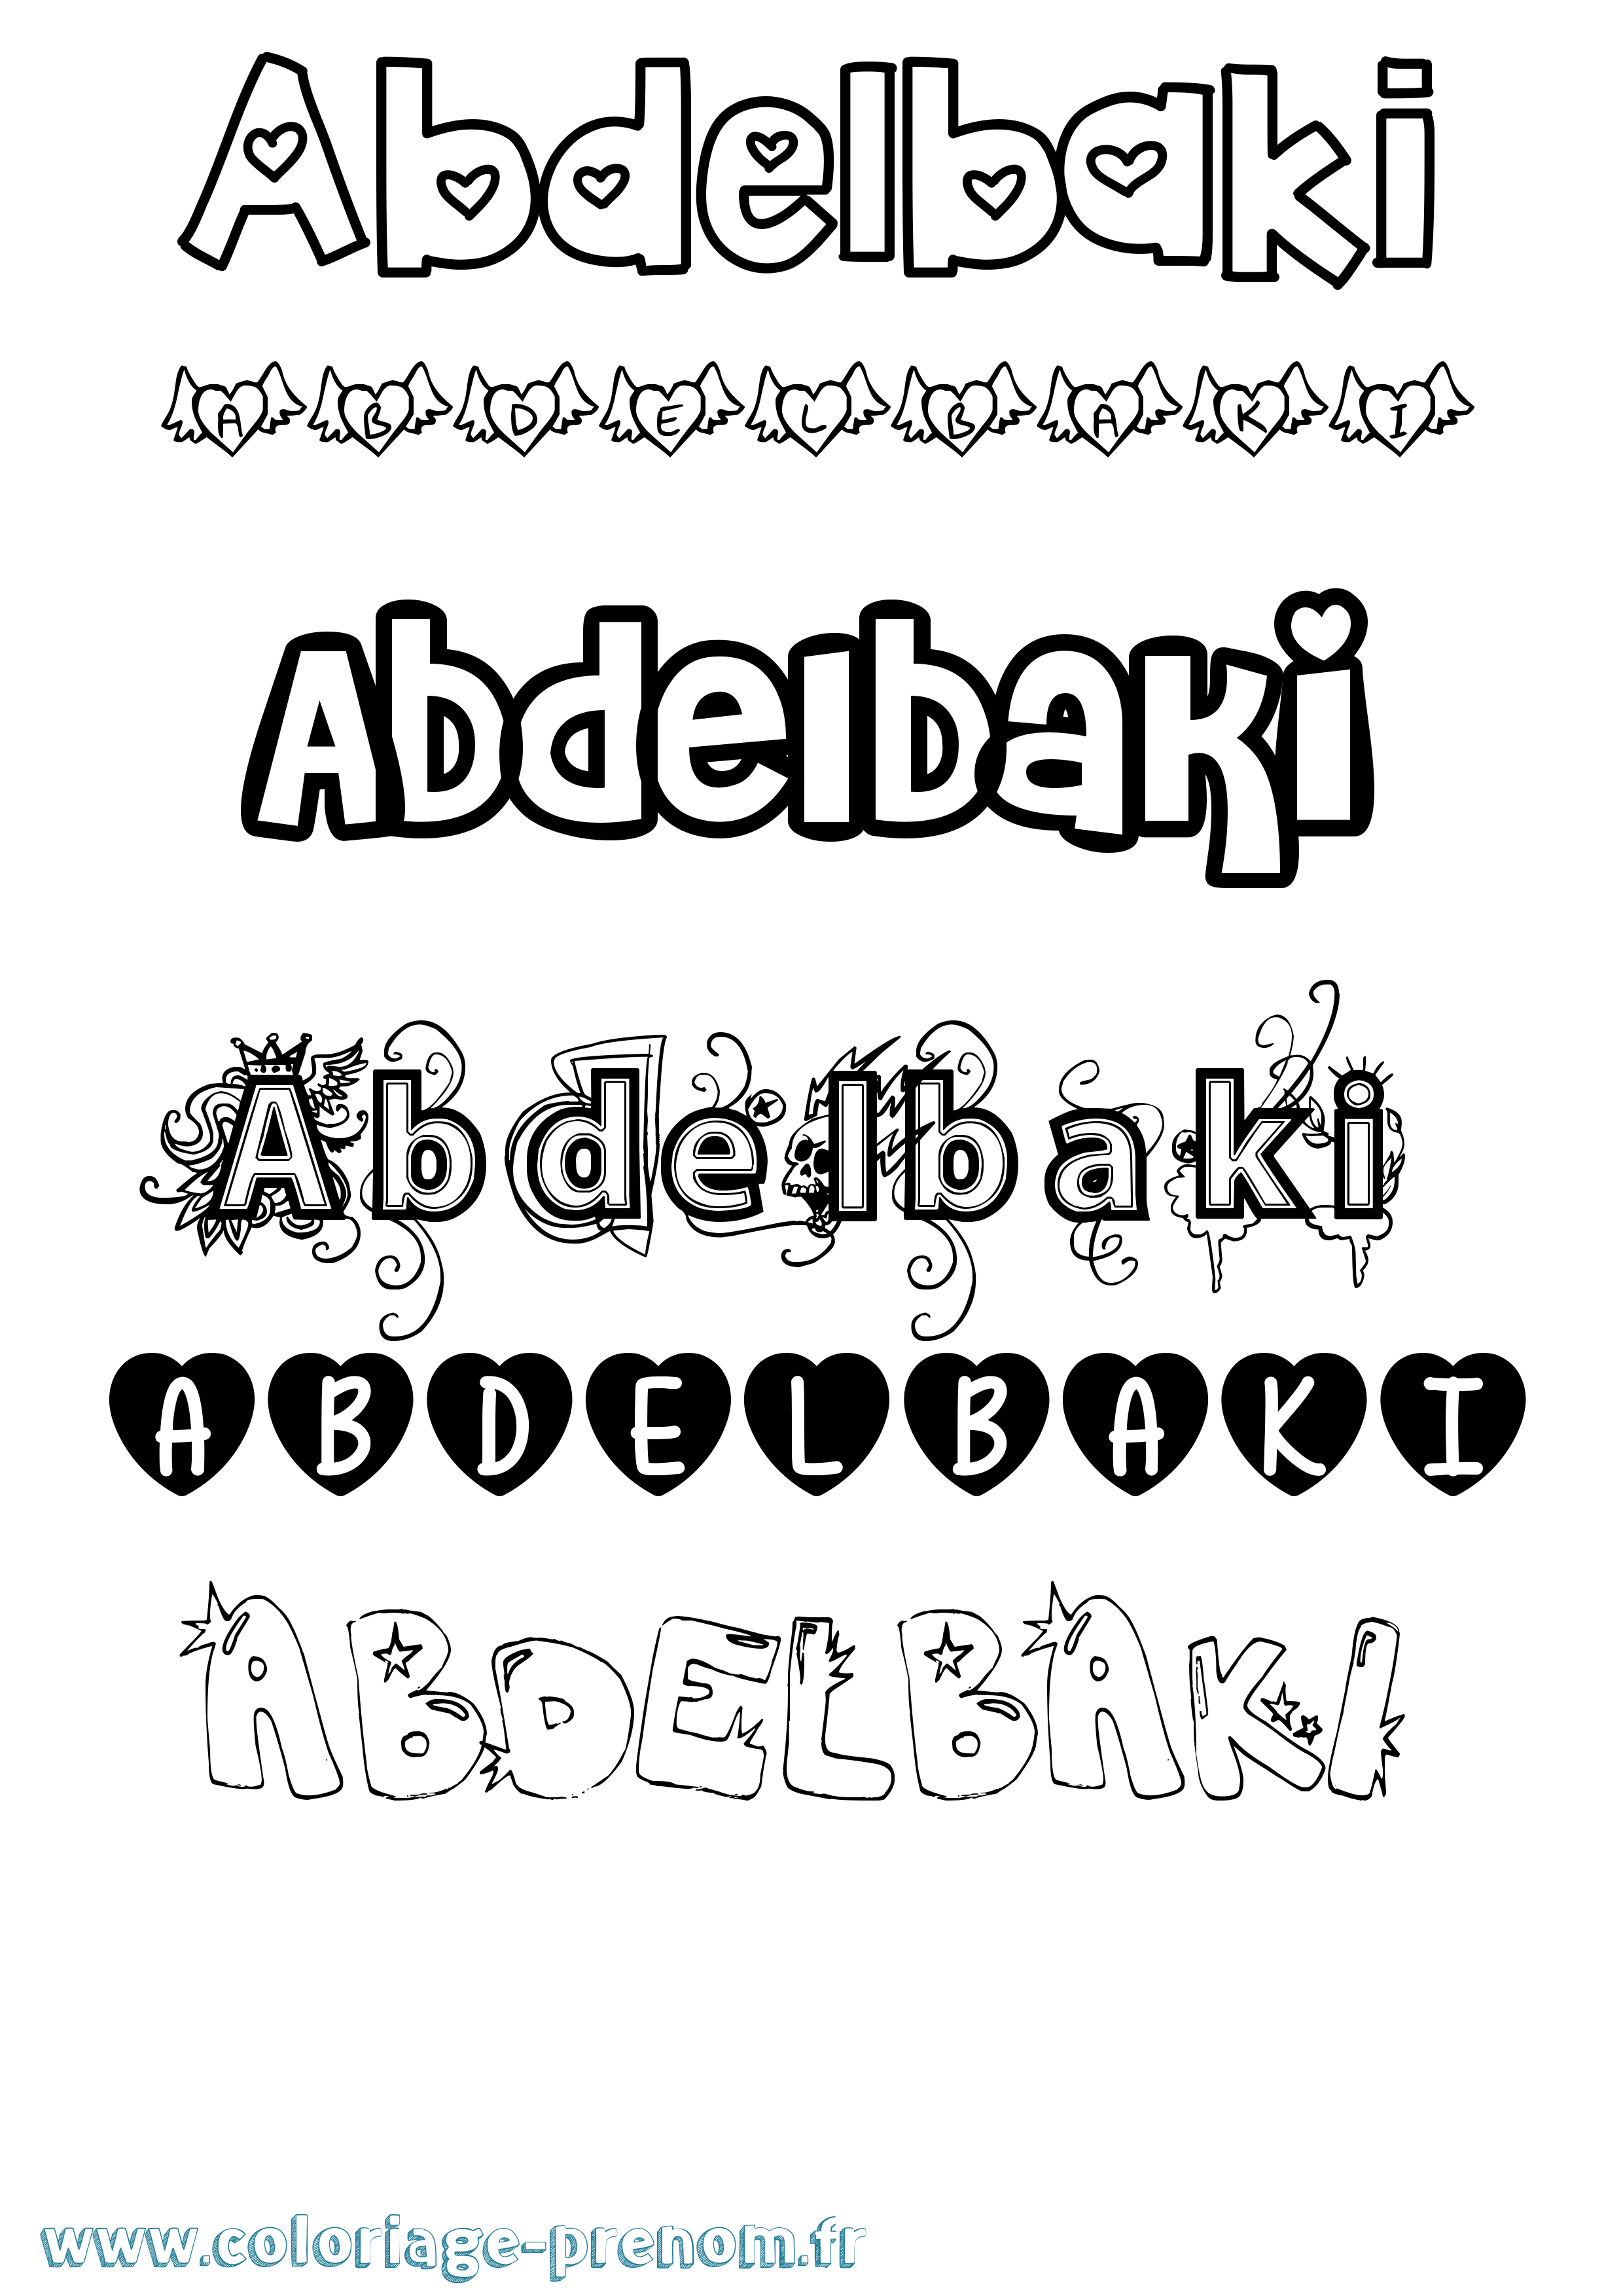 Coloriage prénom Abdelbaki Girly